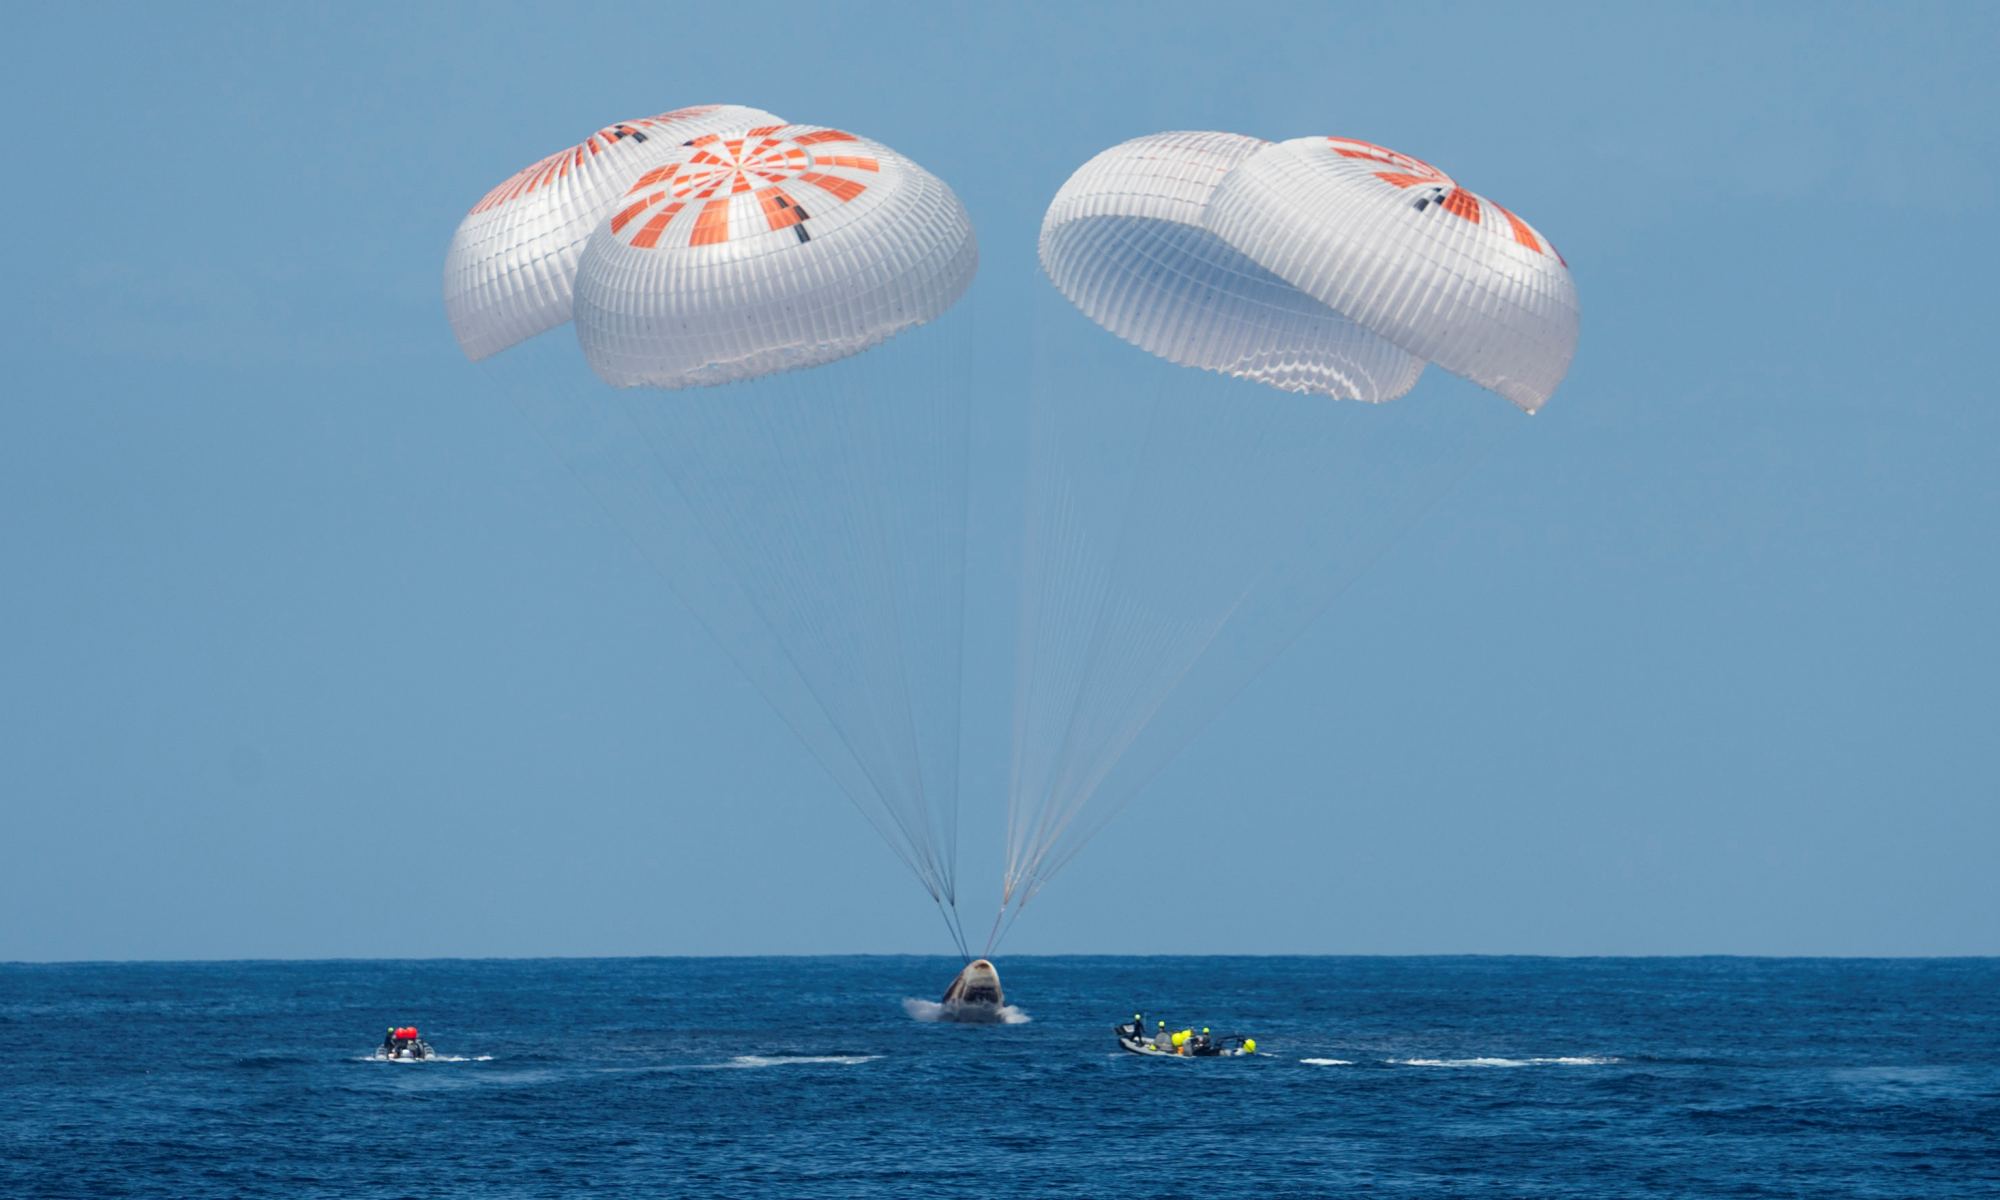 Dragon splashdown with parachutes